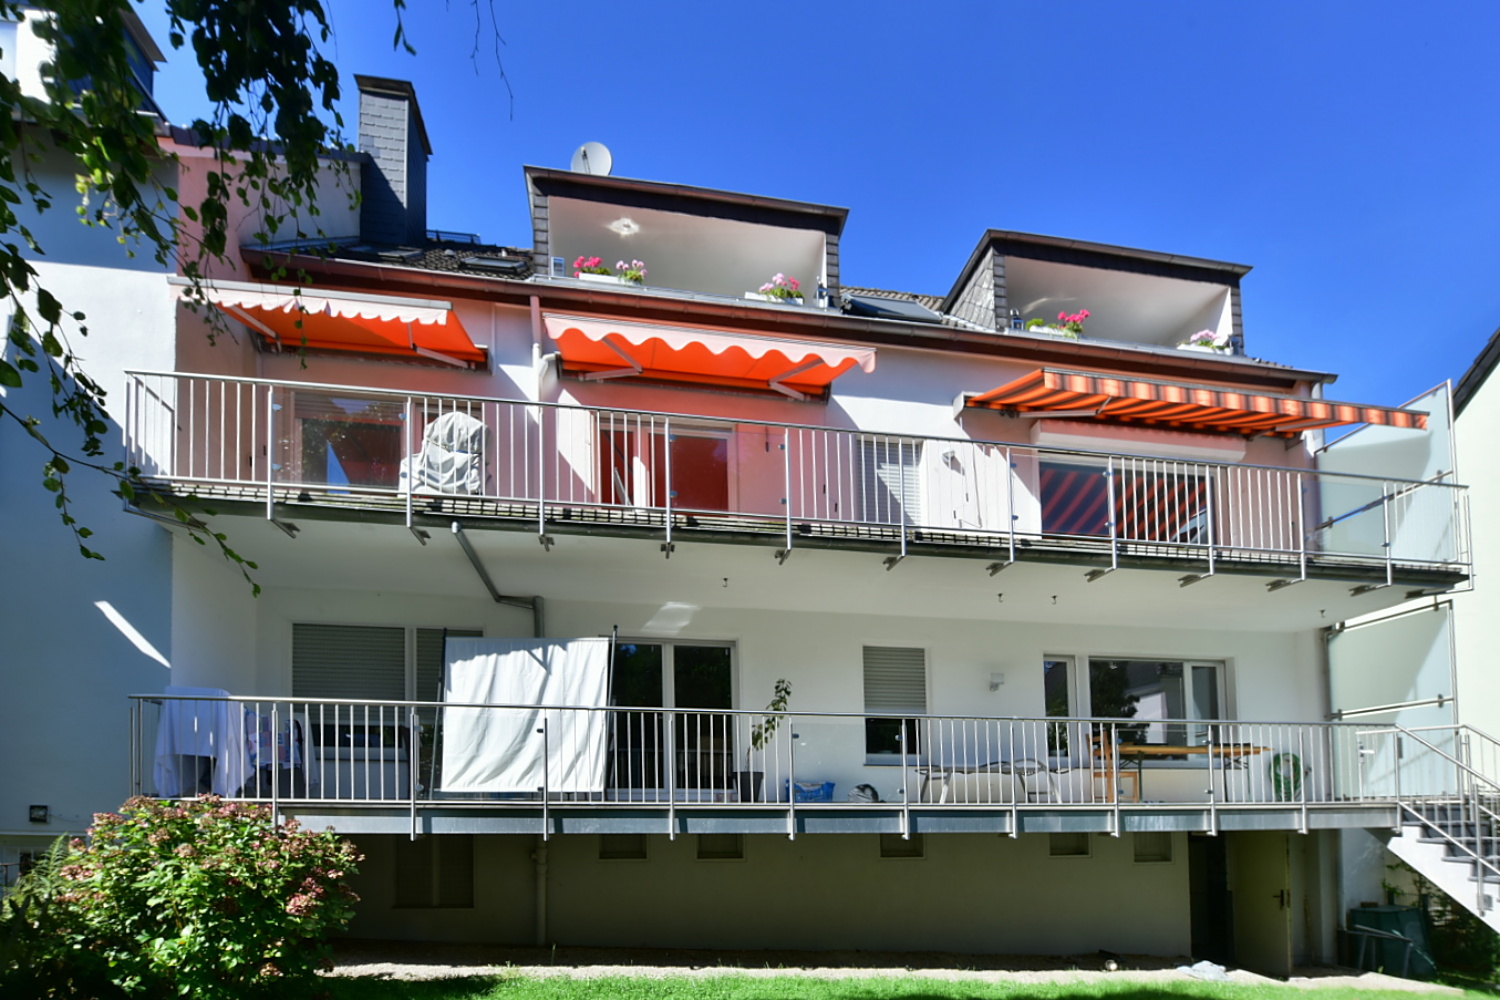 Bredeney + Parkettböden + offene Küche + Bad u. G-WC + 2 Balkone + -3-FH + Gartennutzung + Garage